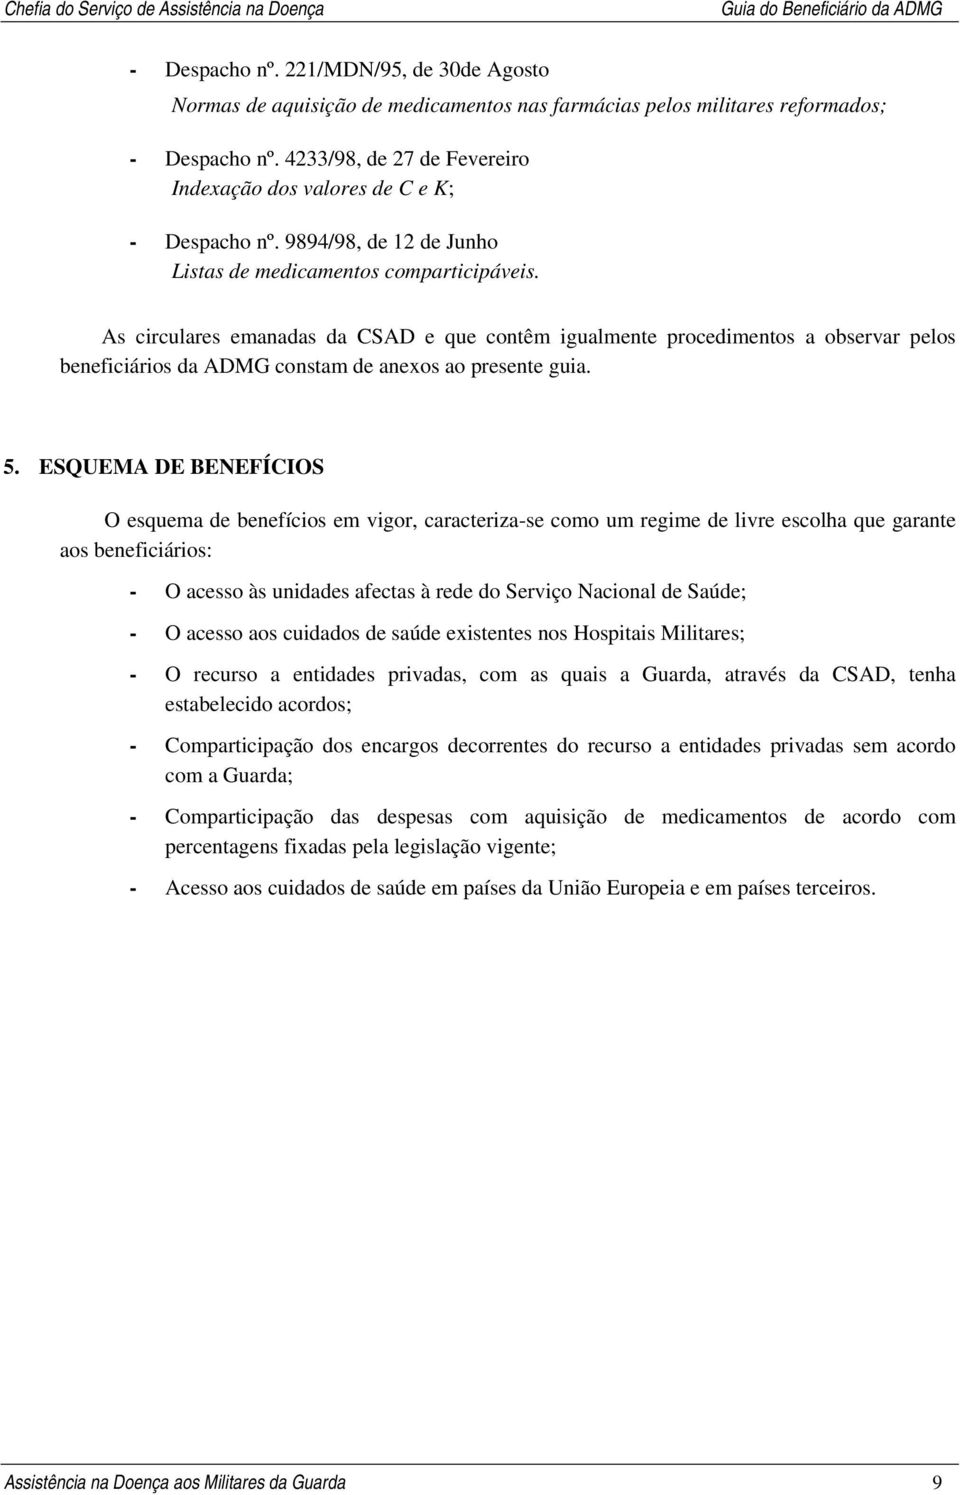 GUIA DO BENEFICIÁRIO DA ADMG - PDF Download grátis